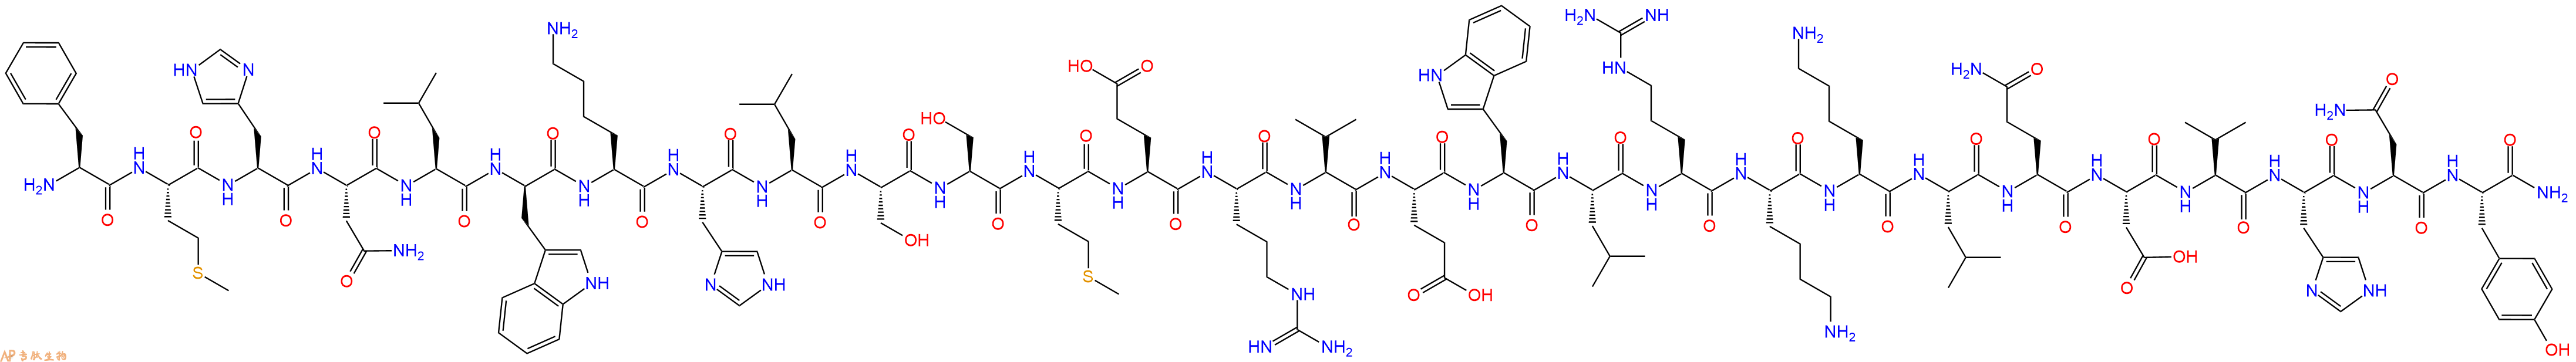 专肽生物产品甲状旁腺激素 [DTrp12, Tyr34]-pTH(7-34), -Parathyroid Hor118102-98-0